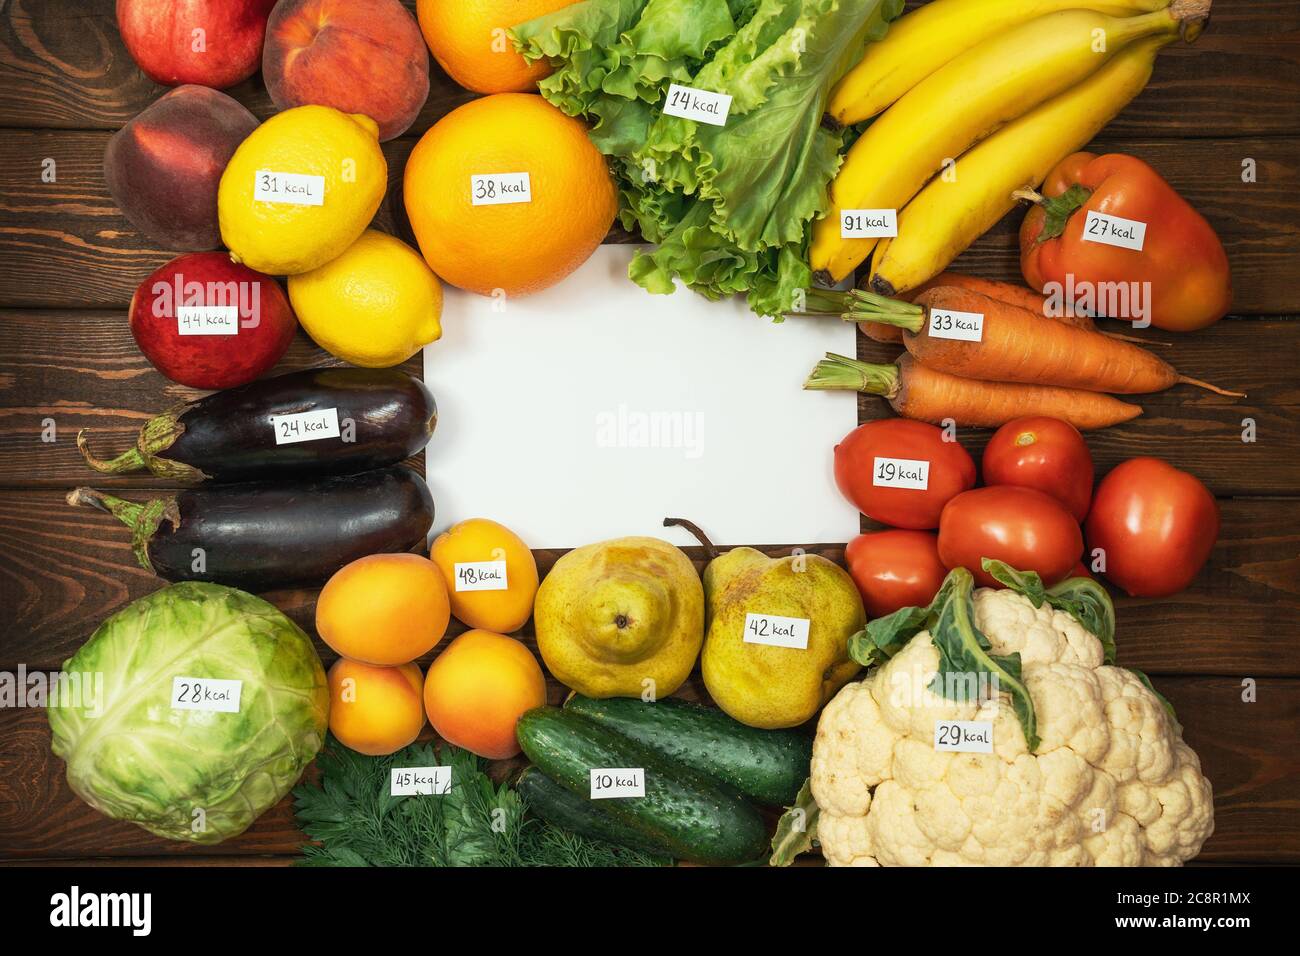 Diferentes tipos de frutas y verduras crudas con etiquetas de calorías en la mesa de madera y papel blanco vacío como espacio de copia para su texto. Dieta, concepto vegetariano de alimentos orgánicos saludables. Foto de stock